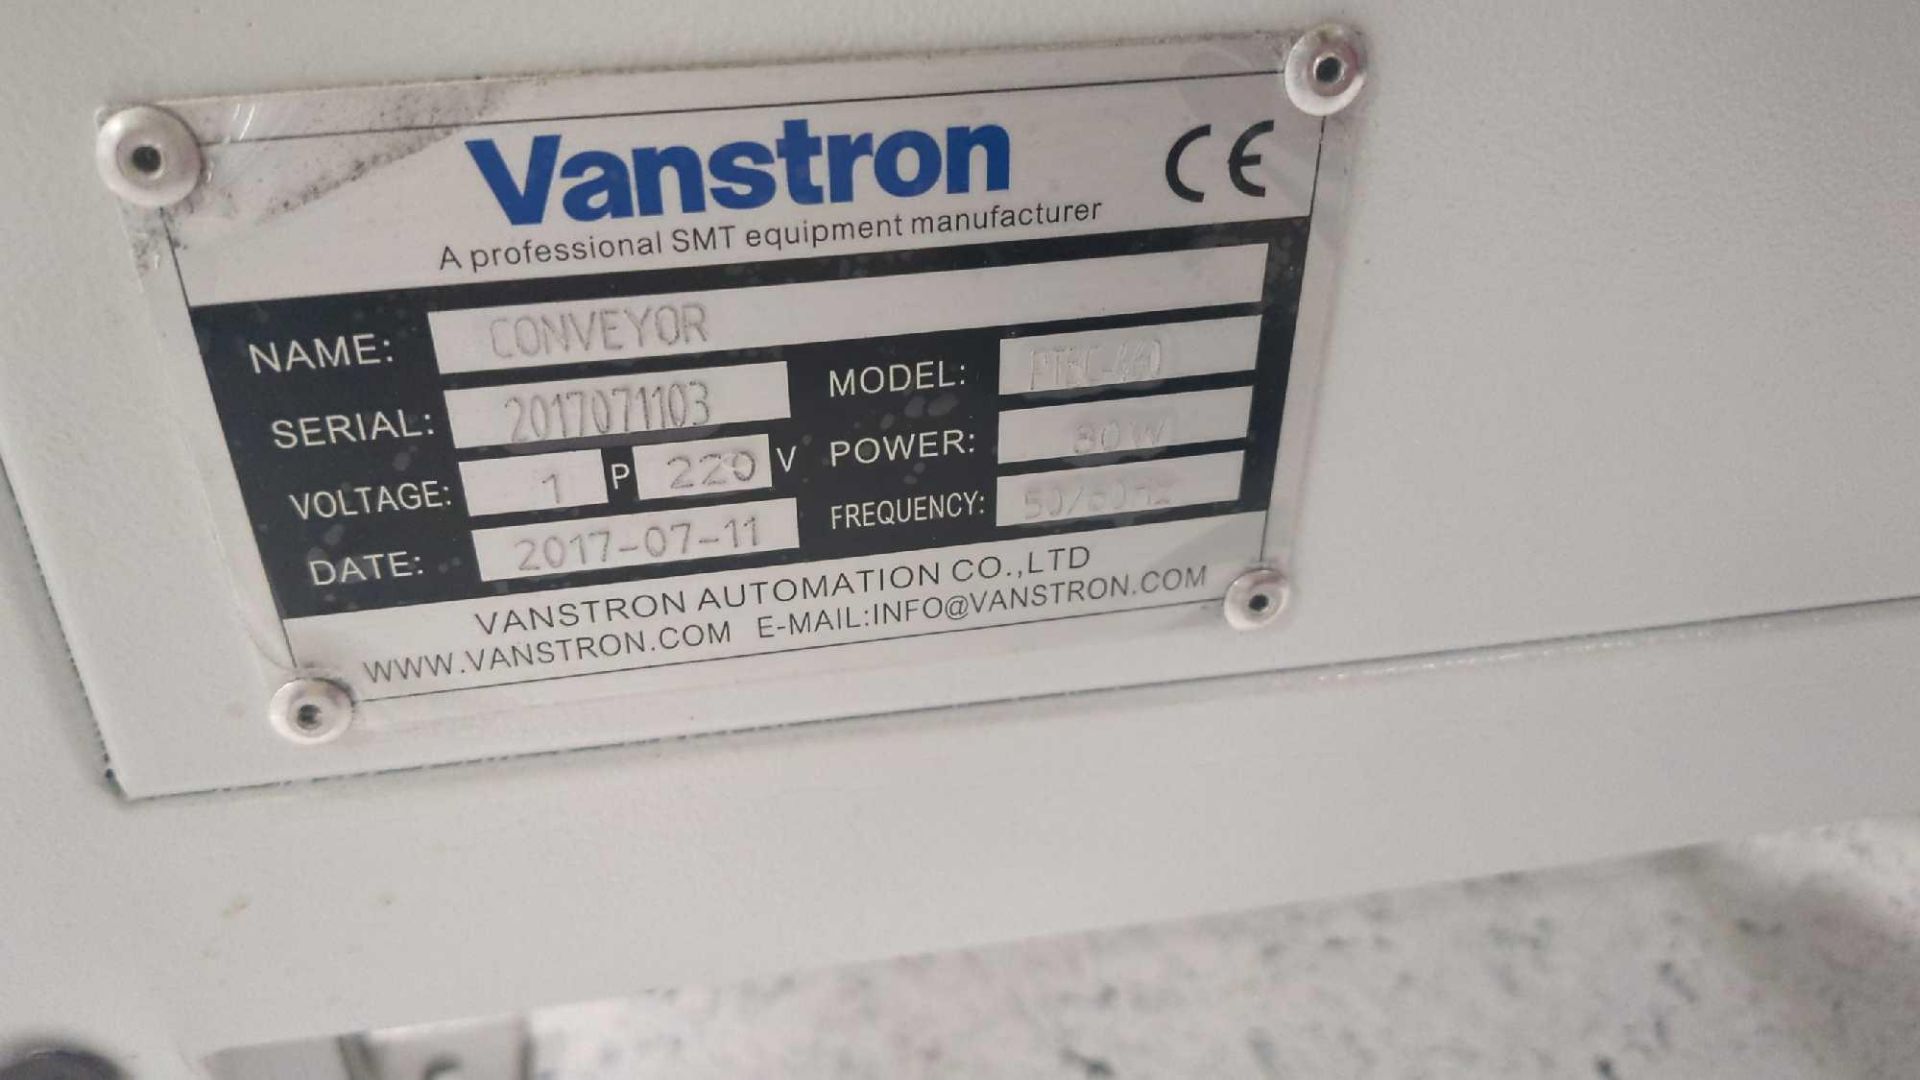 Vanstron conveyor bench - Image 2 of 3